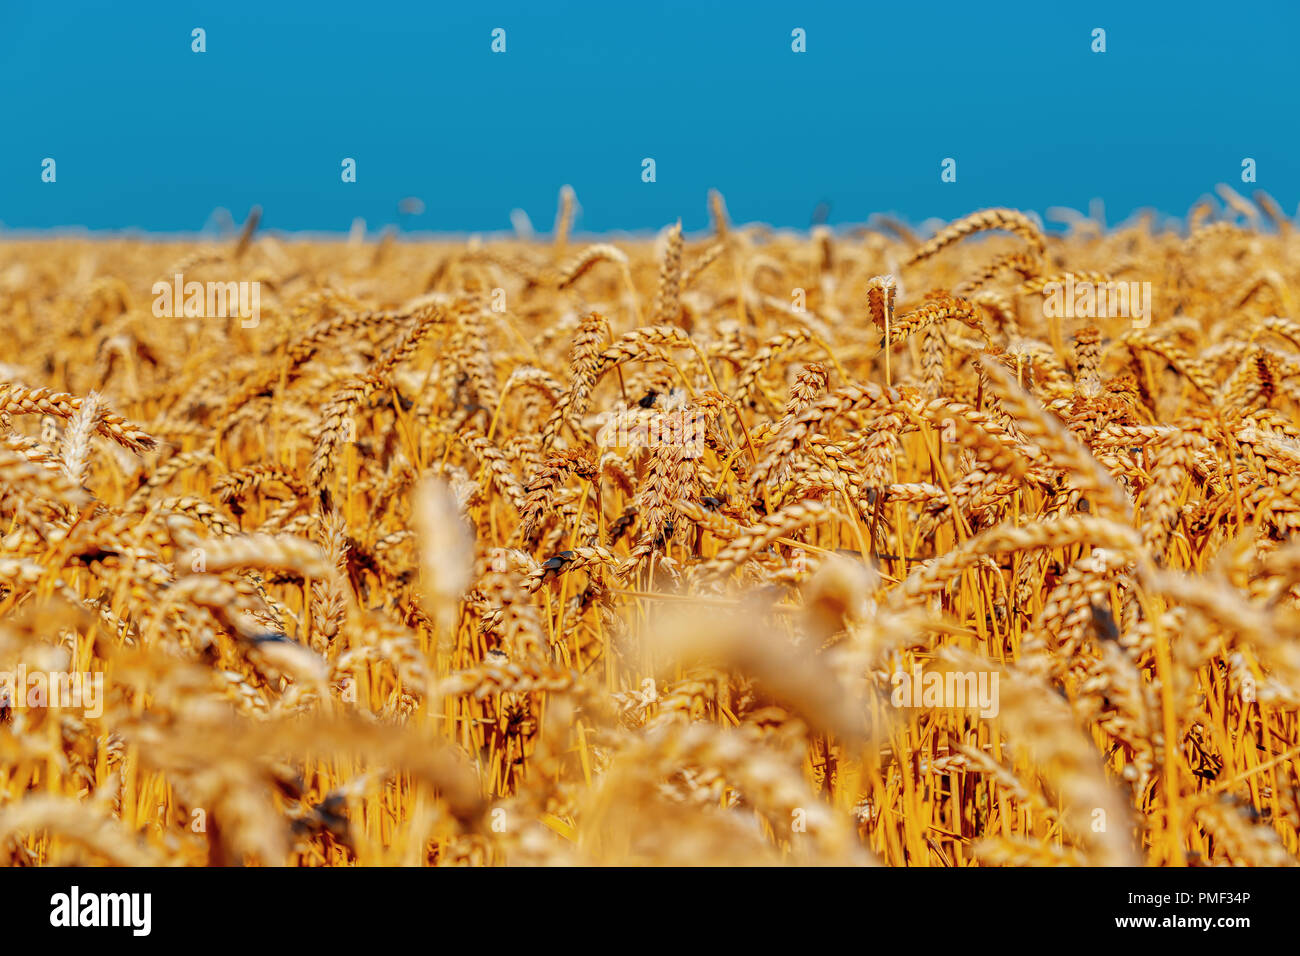 L'or des épis de blé contre le ciel bleu et nuages Soft focus, libre, de l'agriculture contexte. Banque D'Images